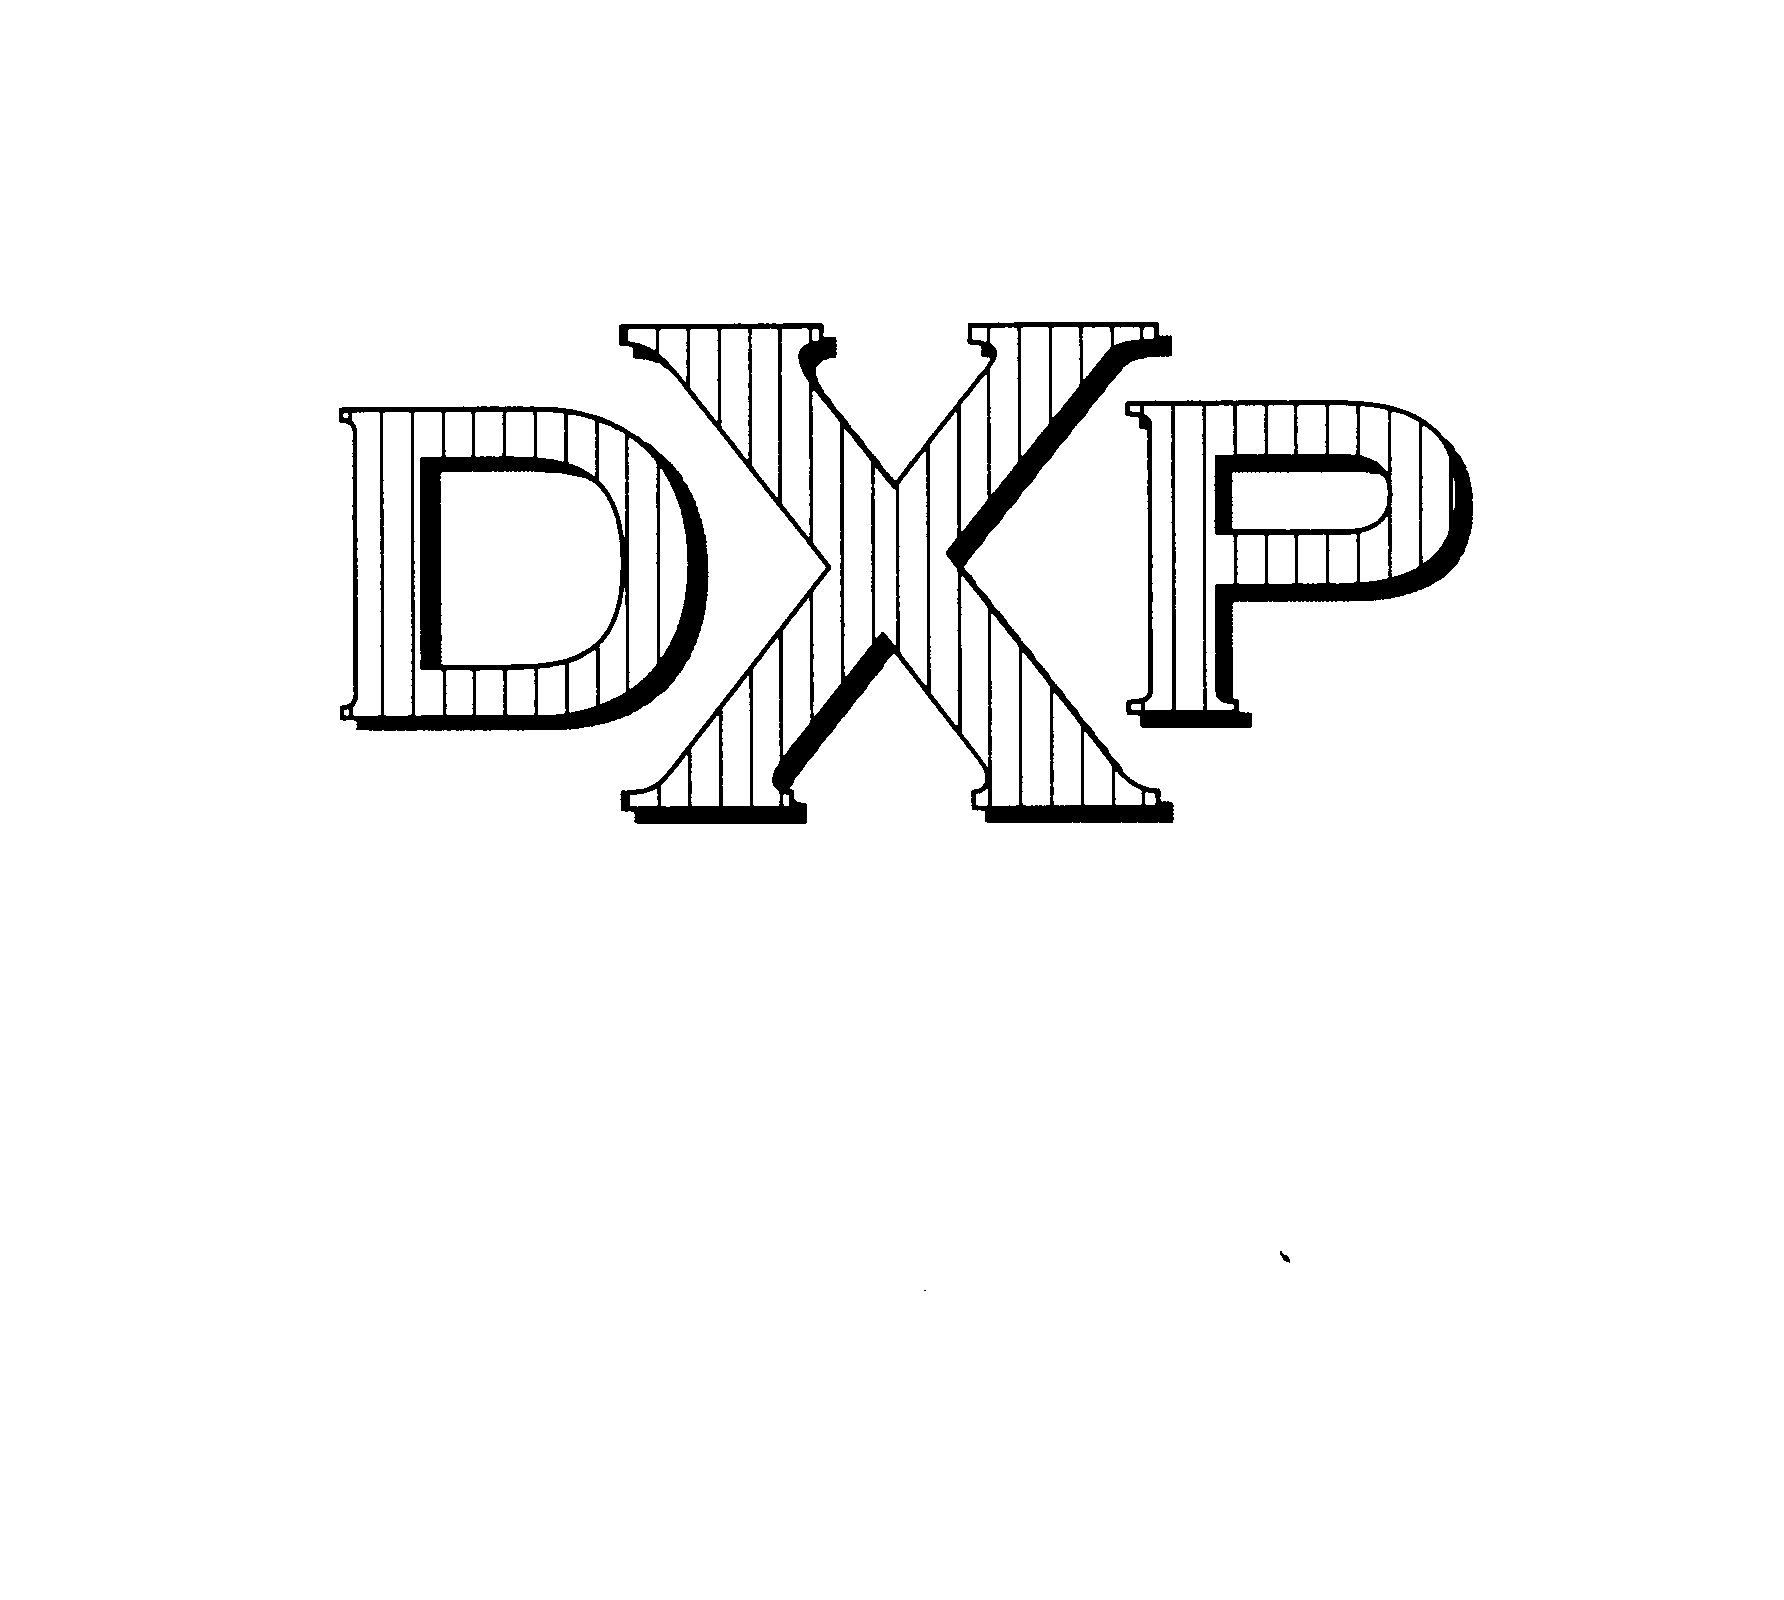 DXP